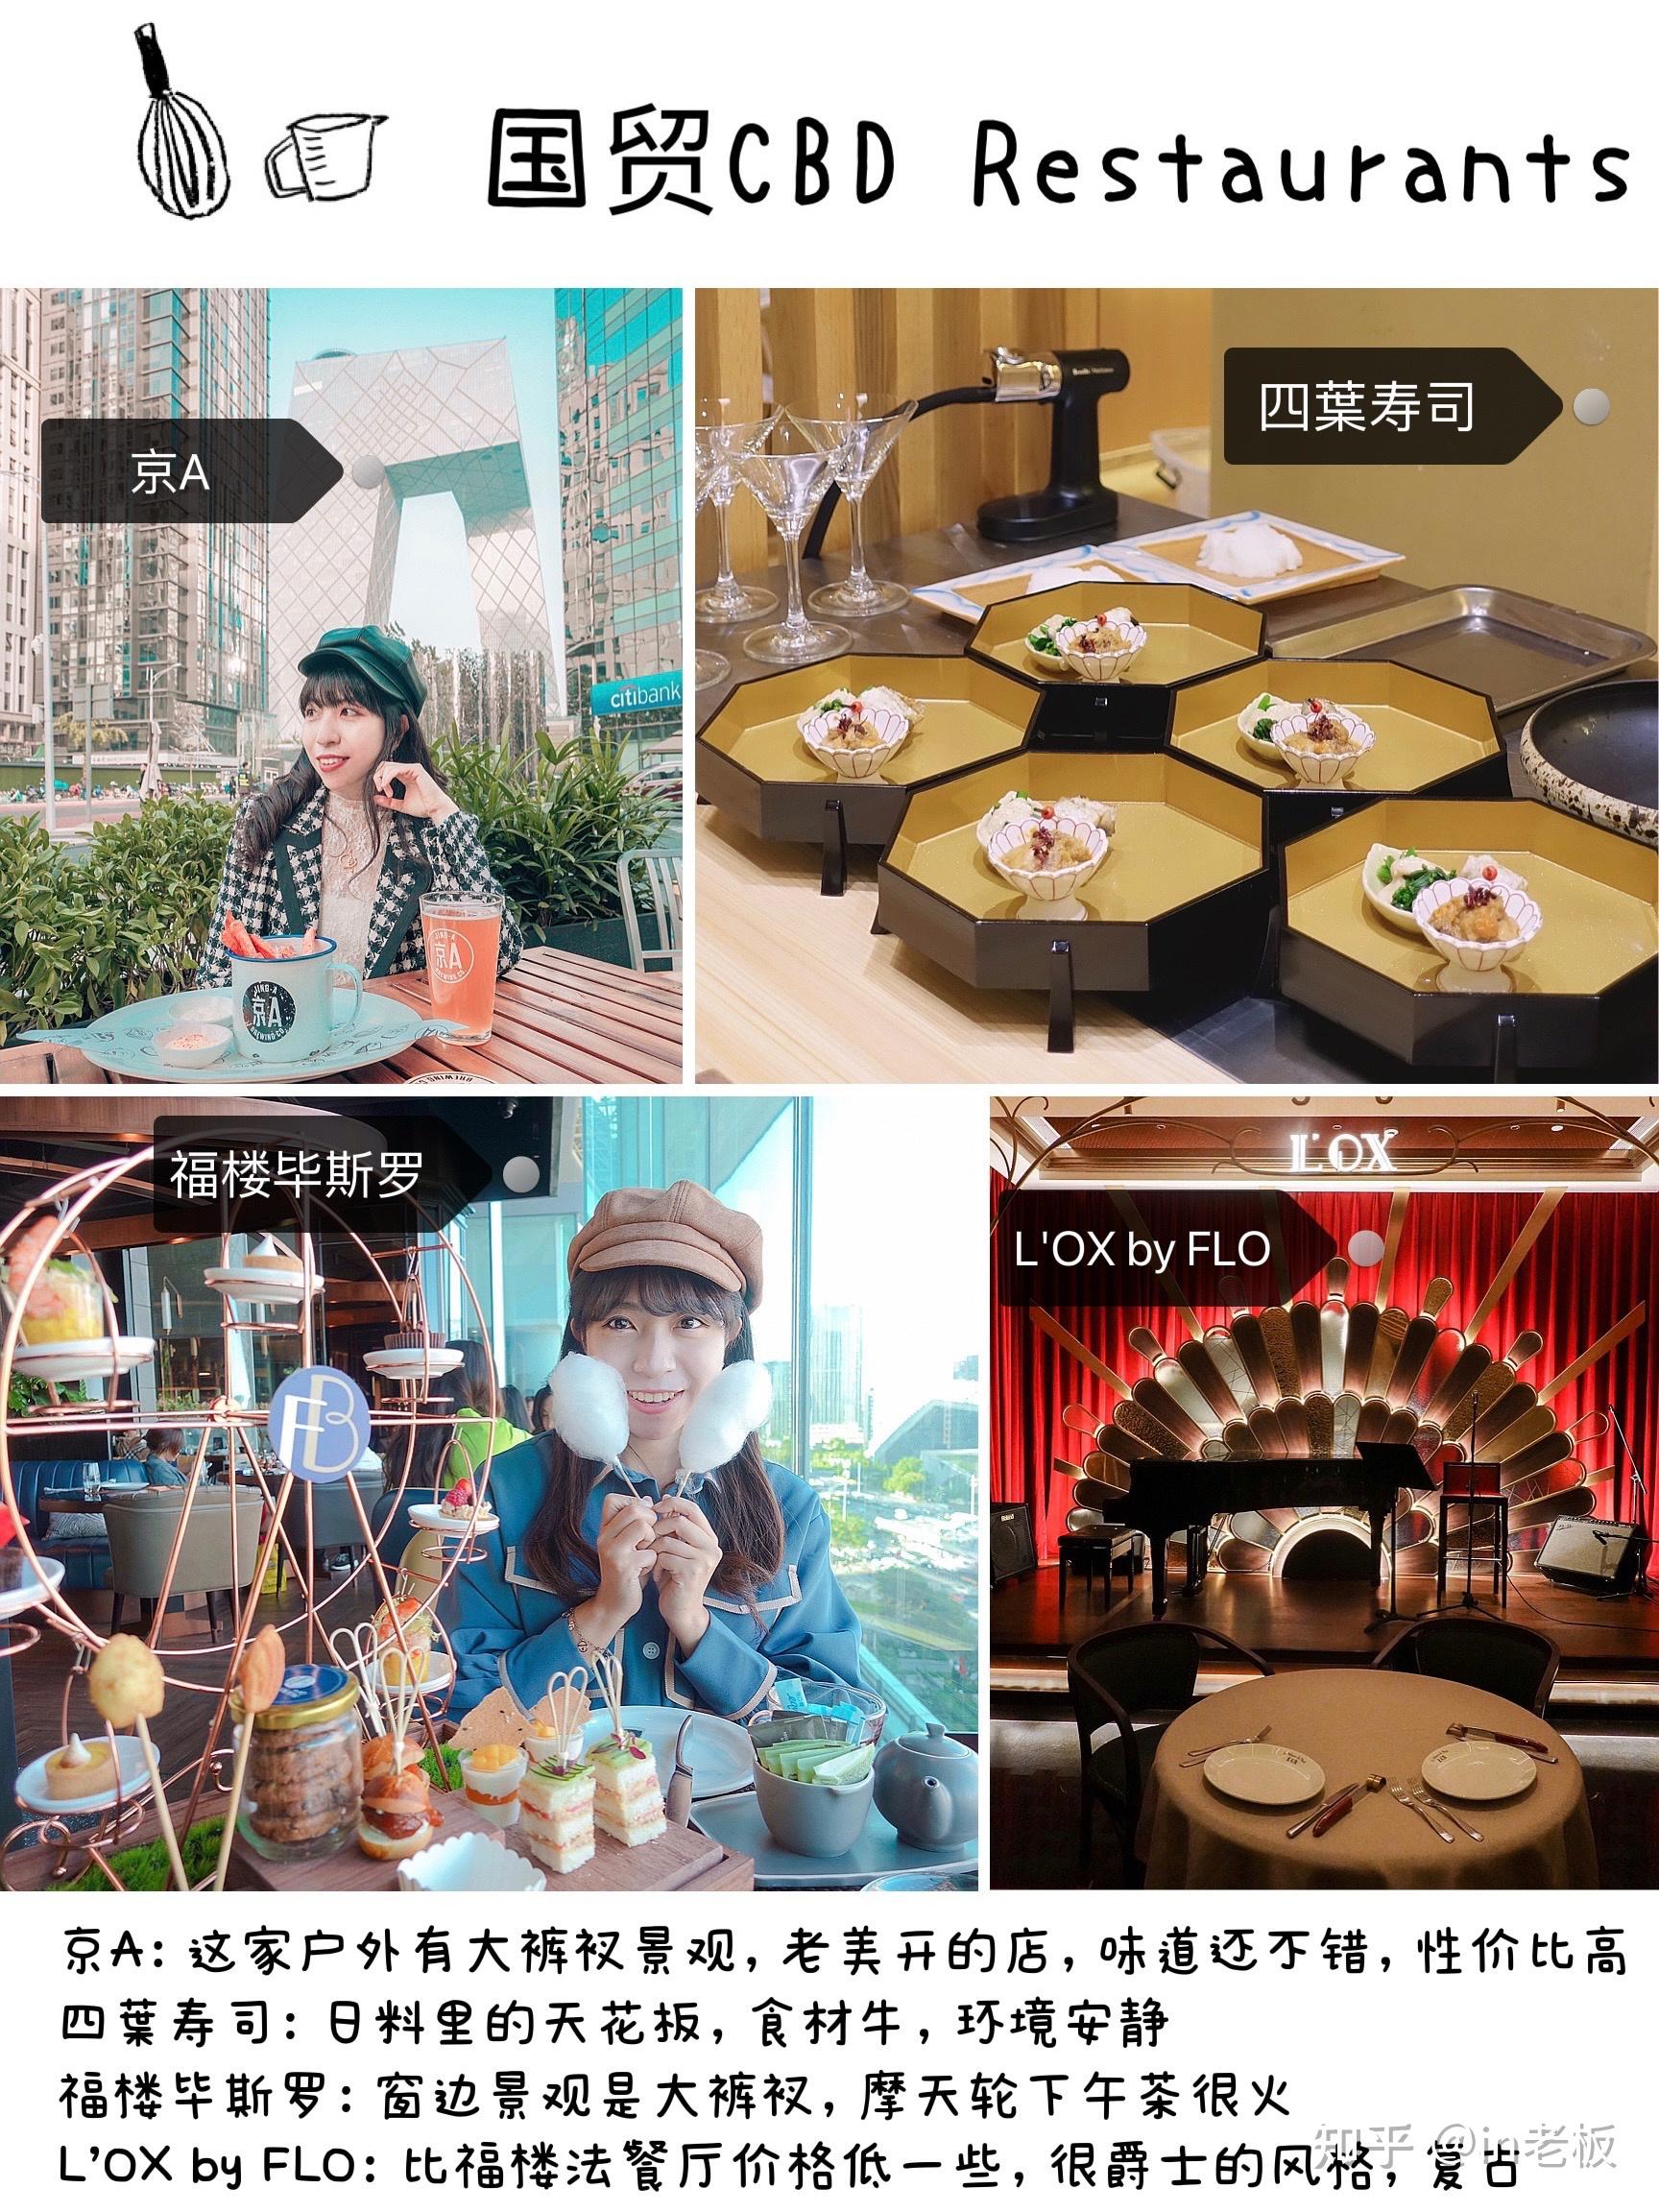 浪漫的情侣在餐厅约会-蓝牛仔影像-中国原创广告影像素材